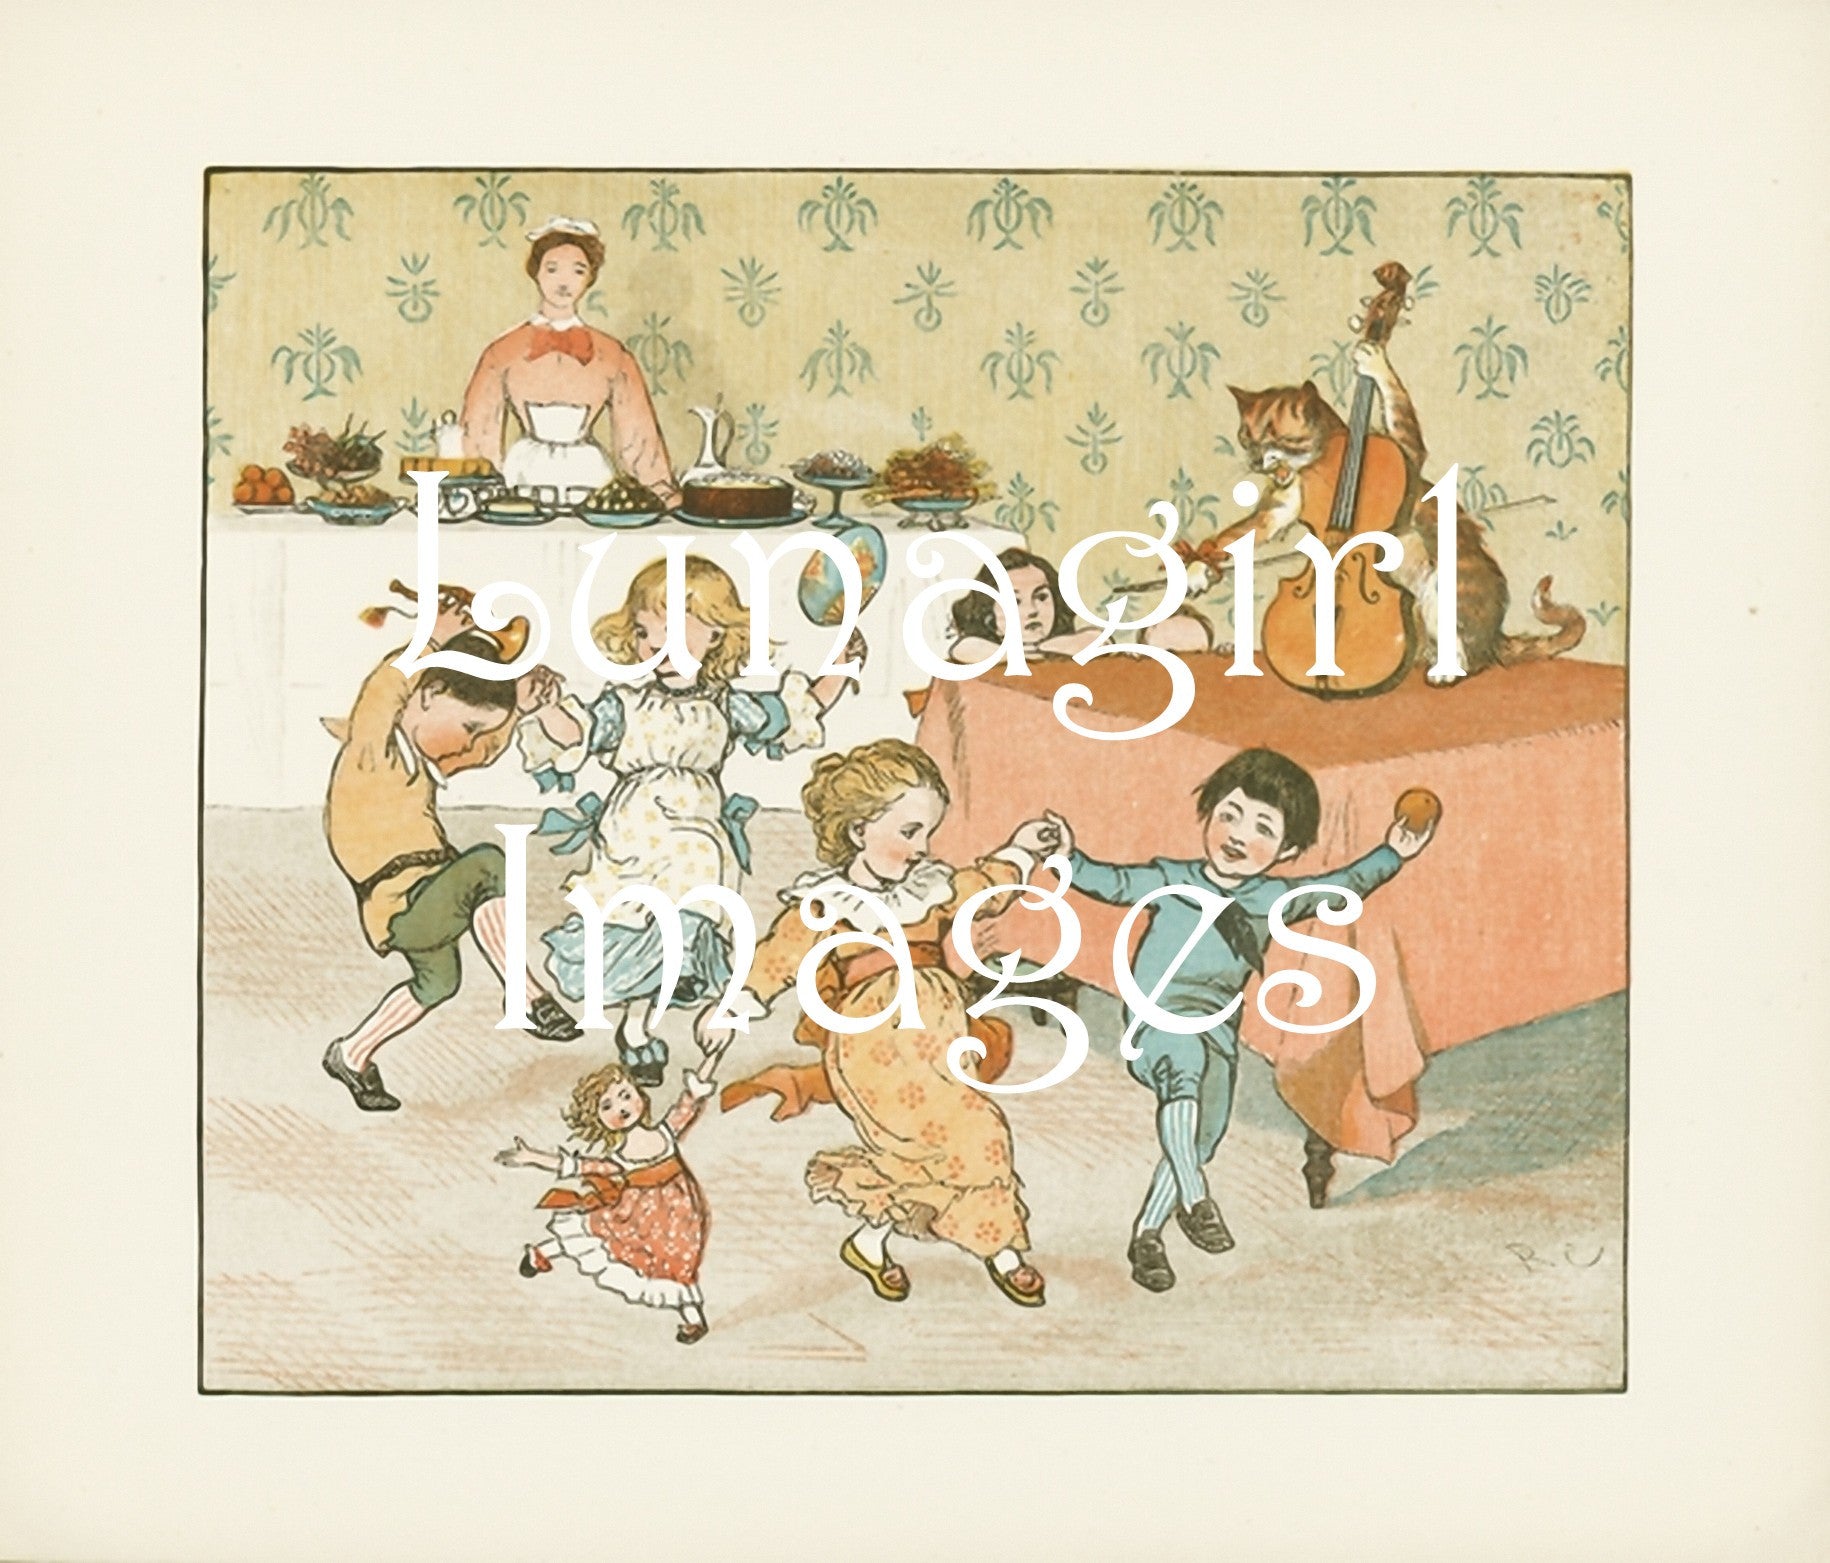 Caldecott Nursery Books: 100s of Images - Lunagirl